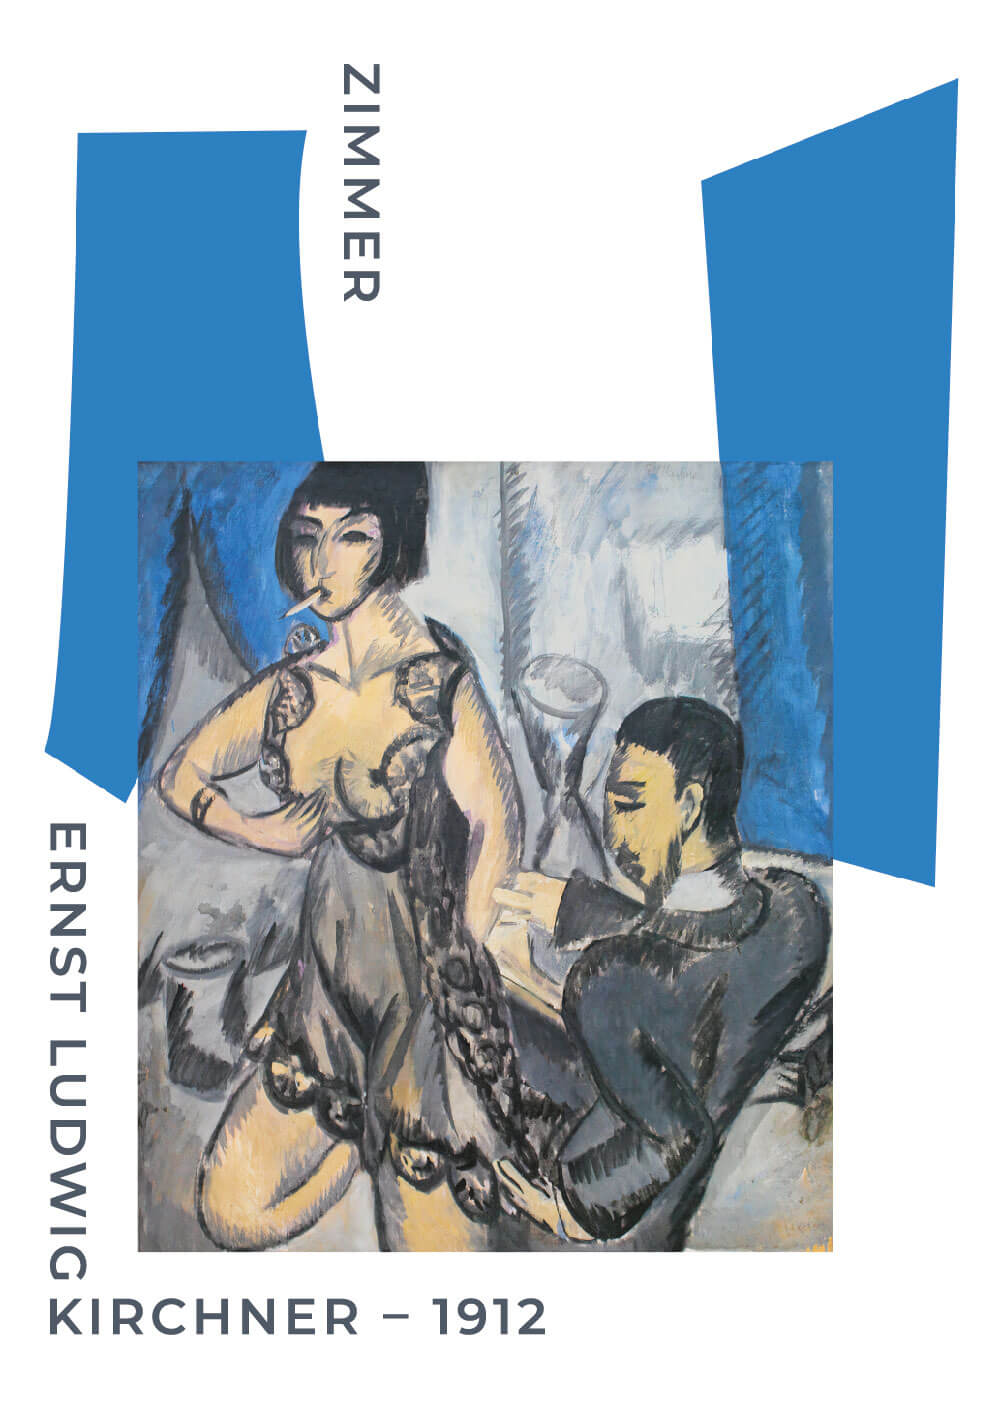 Zimmer - Ernst L. Kirchner museumsplakat